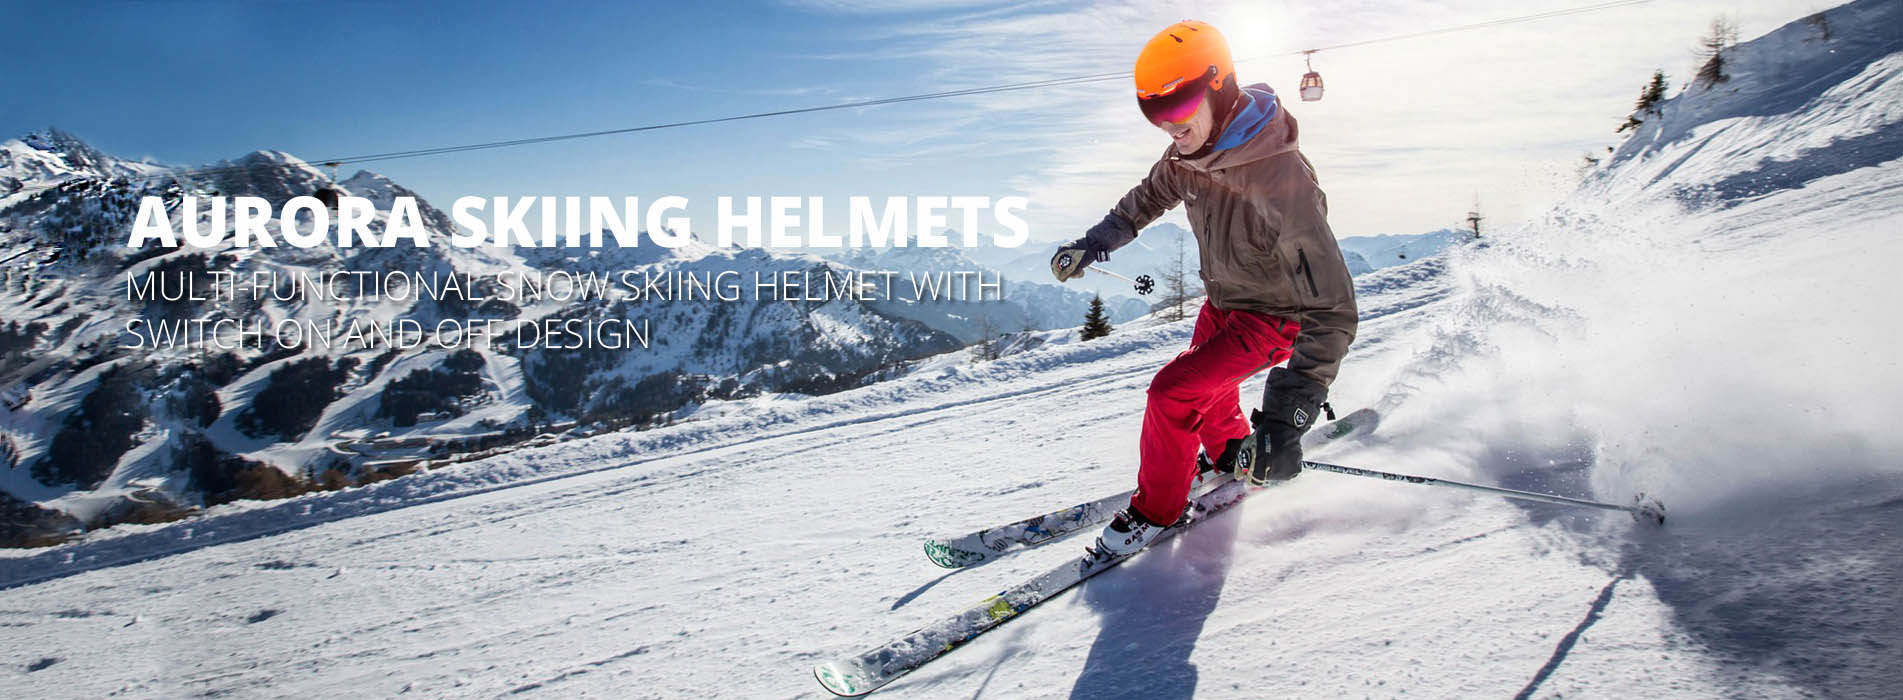 ski helmet banner